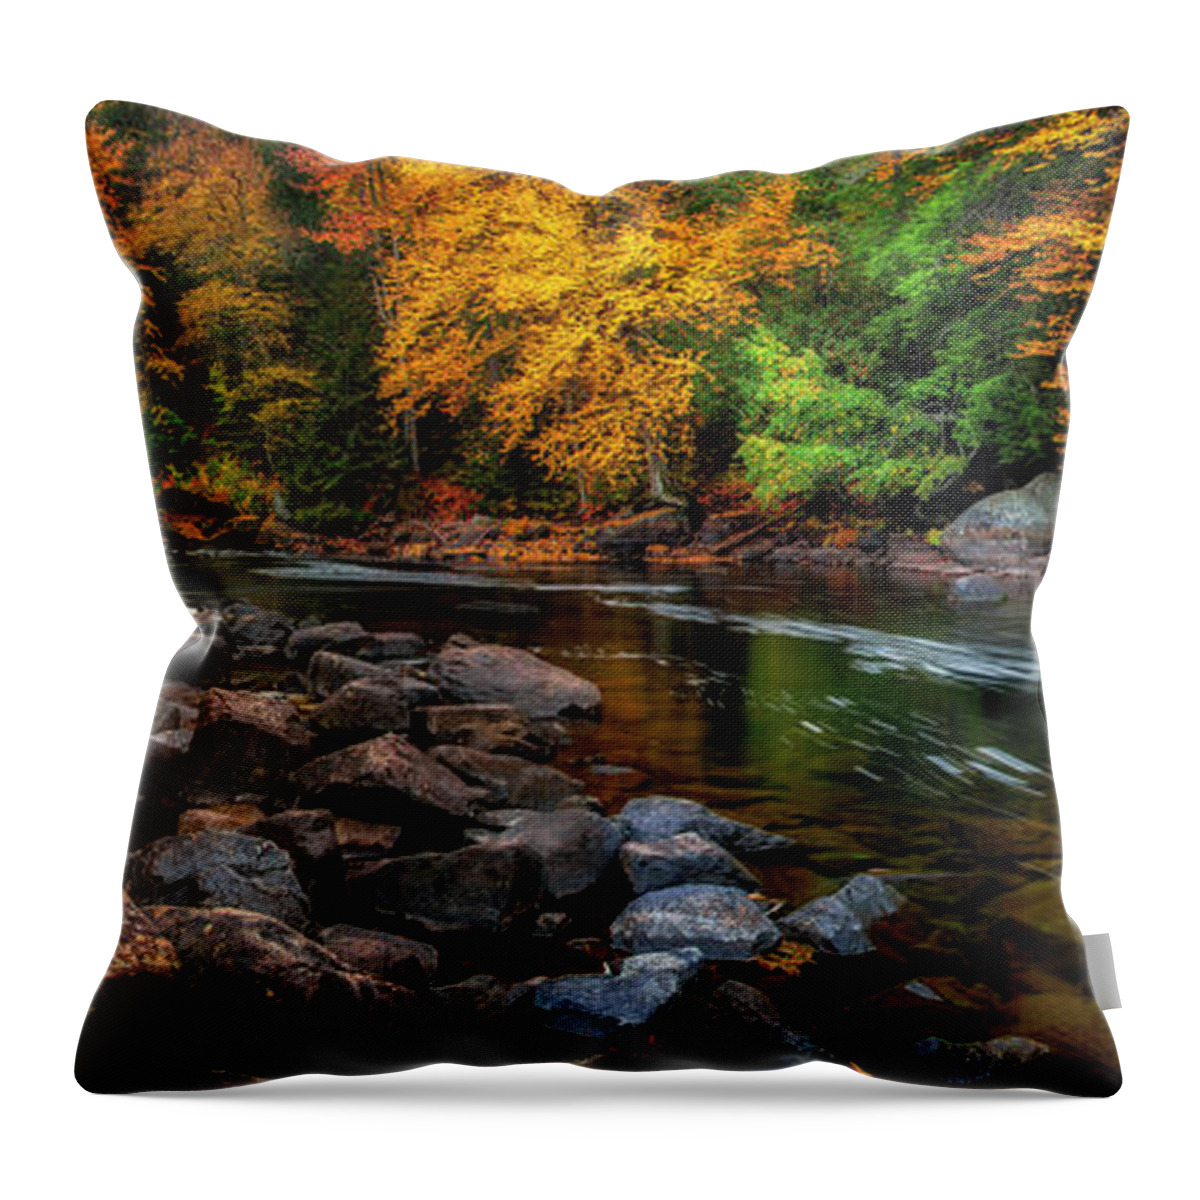 Buttermilk Falls Throw Pillow featuring the photograph Adirondacks Buttermilk Falls by Mark Papke